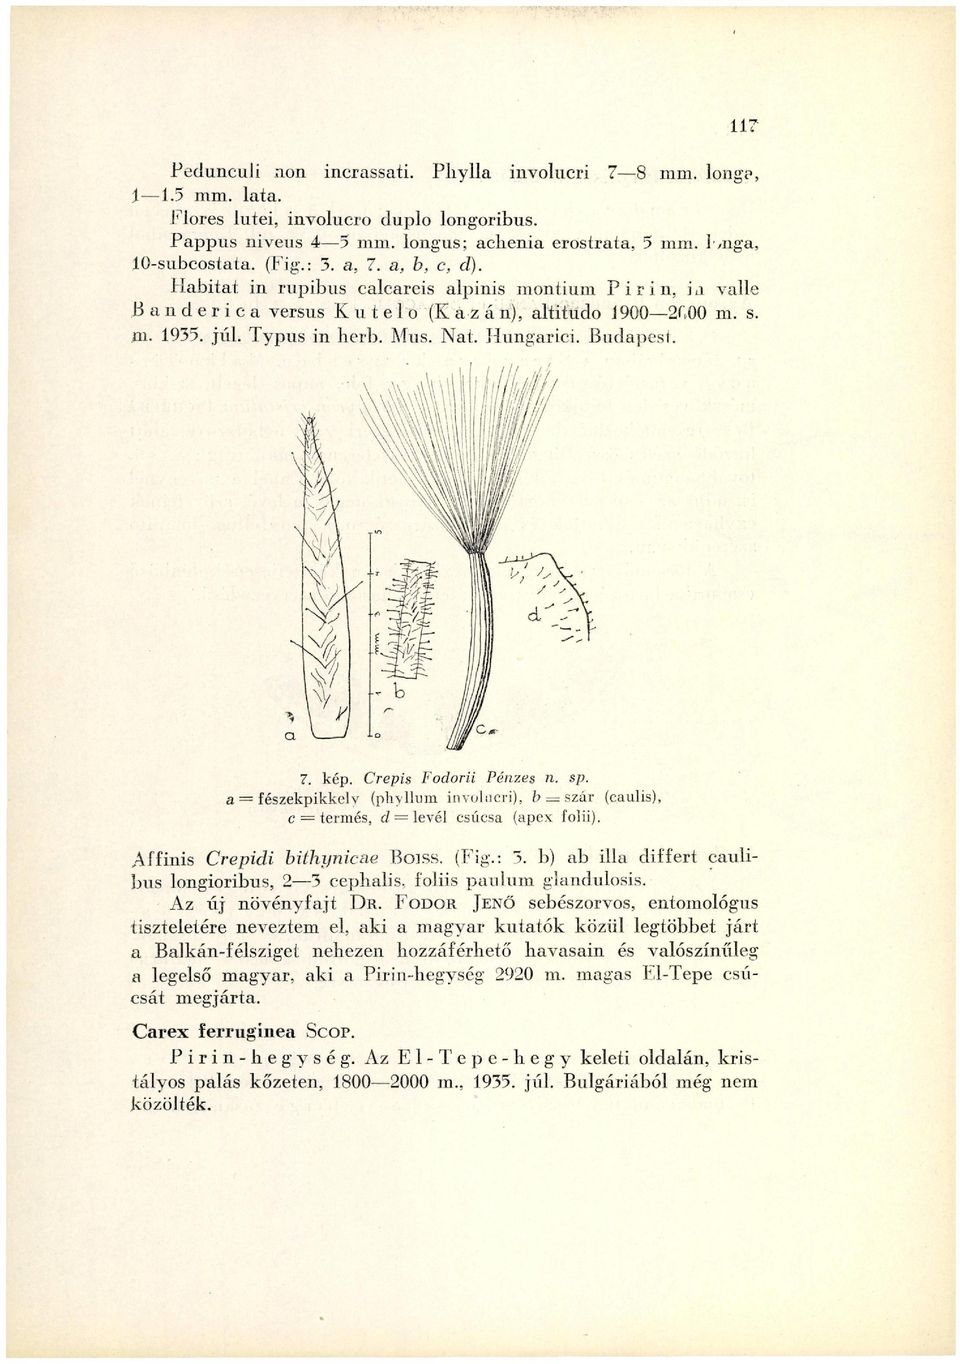 Budapest. 7. kép. Crepis Fodorii Pénzes n. sp. a = fészekpikkely (phyllum involucri), b == szár (caulis), c = termés, d = levél csúcsa (apex folii). Aîfinis Crepidi bithynicae Boiss. (Fig.: 3.